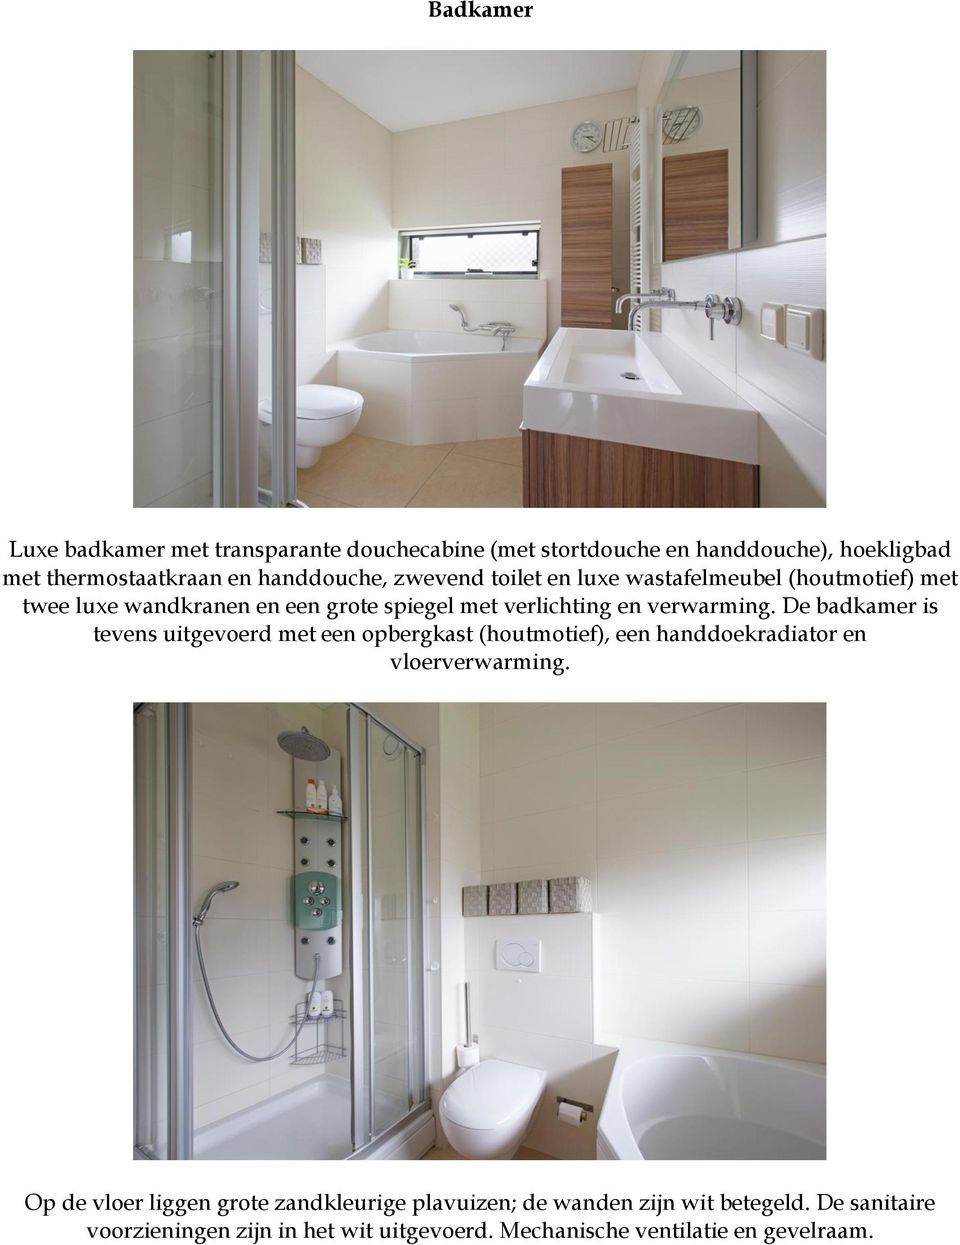 De badkamer is tevens uitgevoerd met een opbergkast (houtmotief), een handdoekradiator en vloerverwarming.